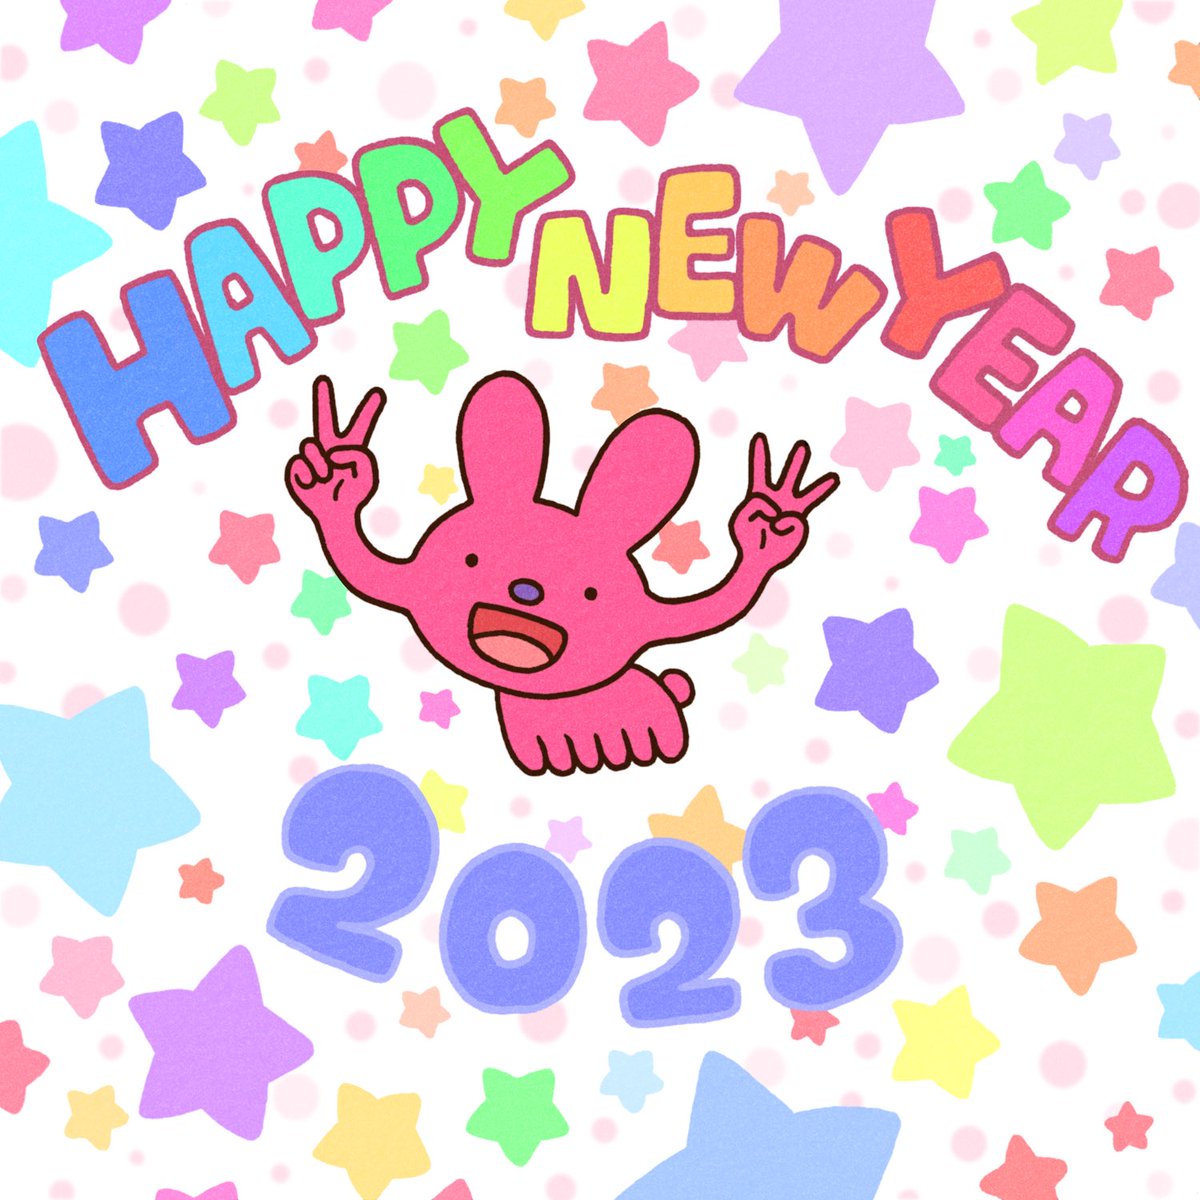 「あけましておめでとうございます!今年もよろしくお願いします! 」|徳田有希のイラスト